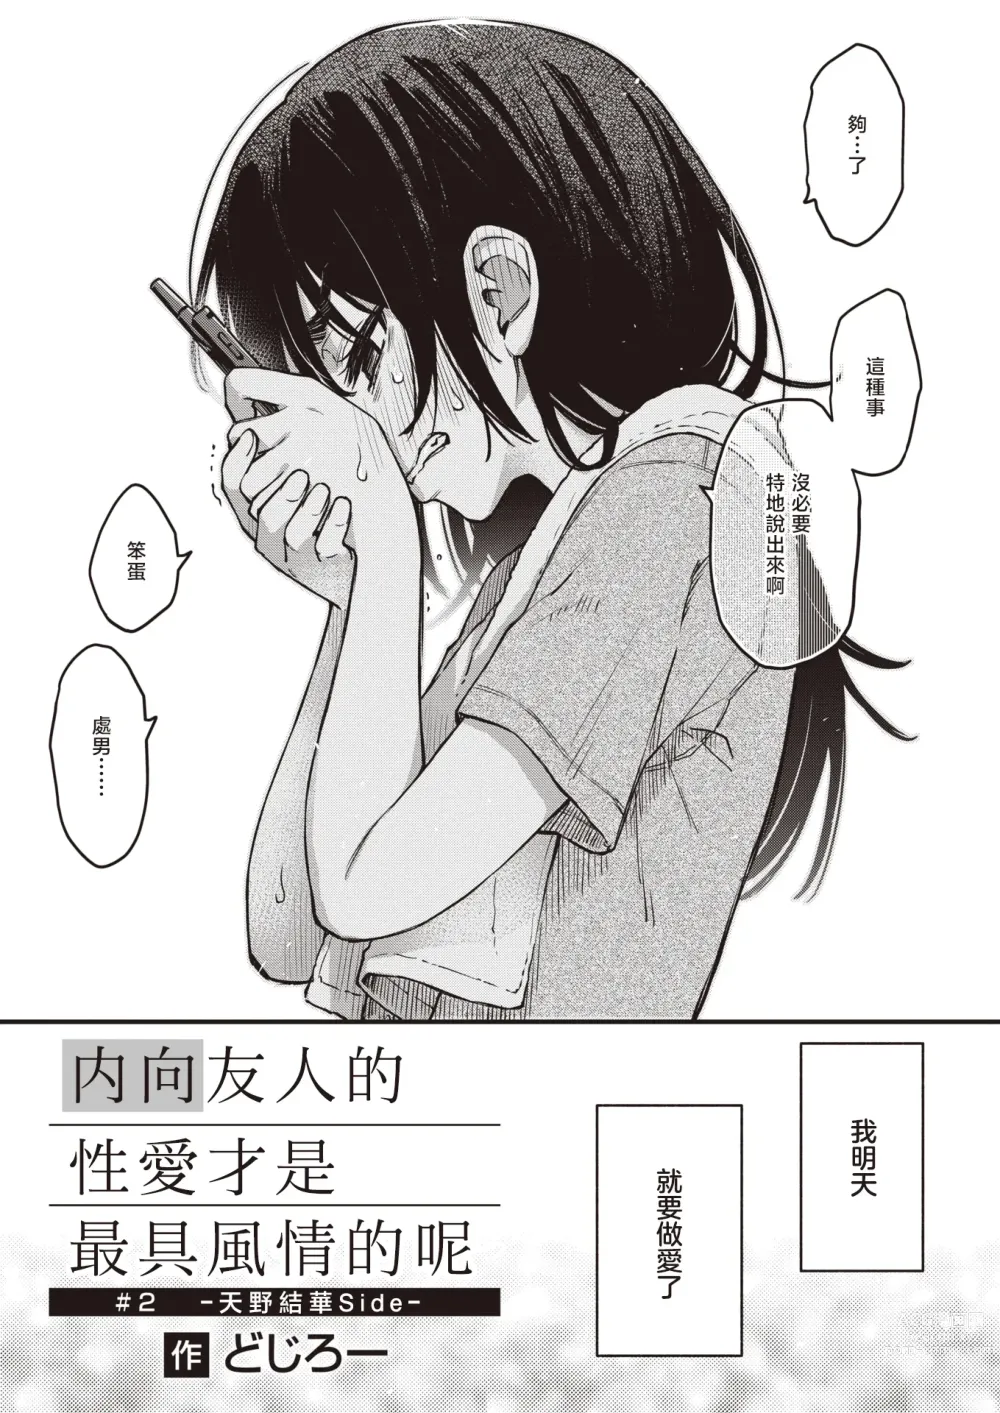 Page 4 of manga 内向友人的性爱才是最具风情的呢#2 -天野结华Side-